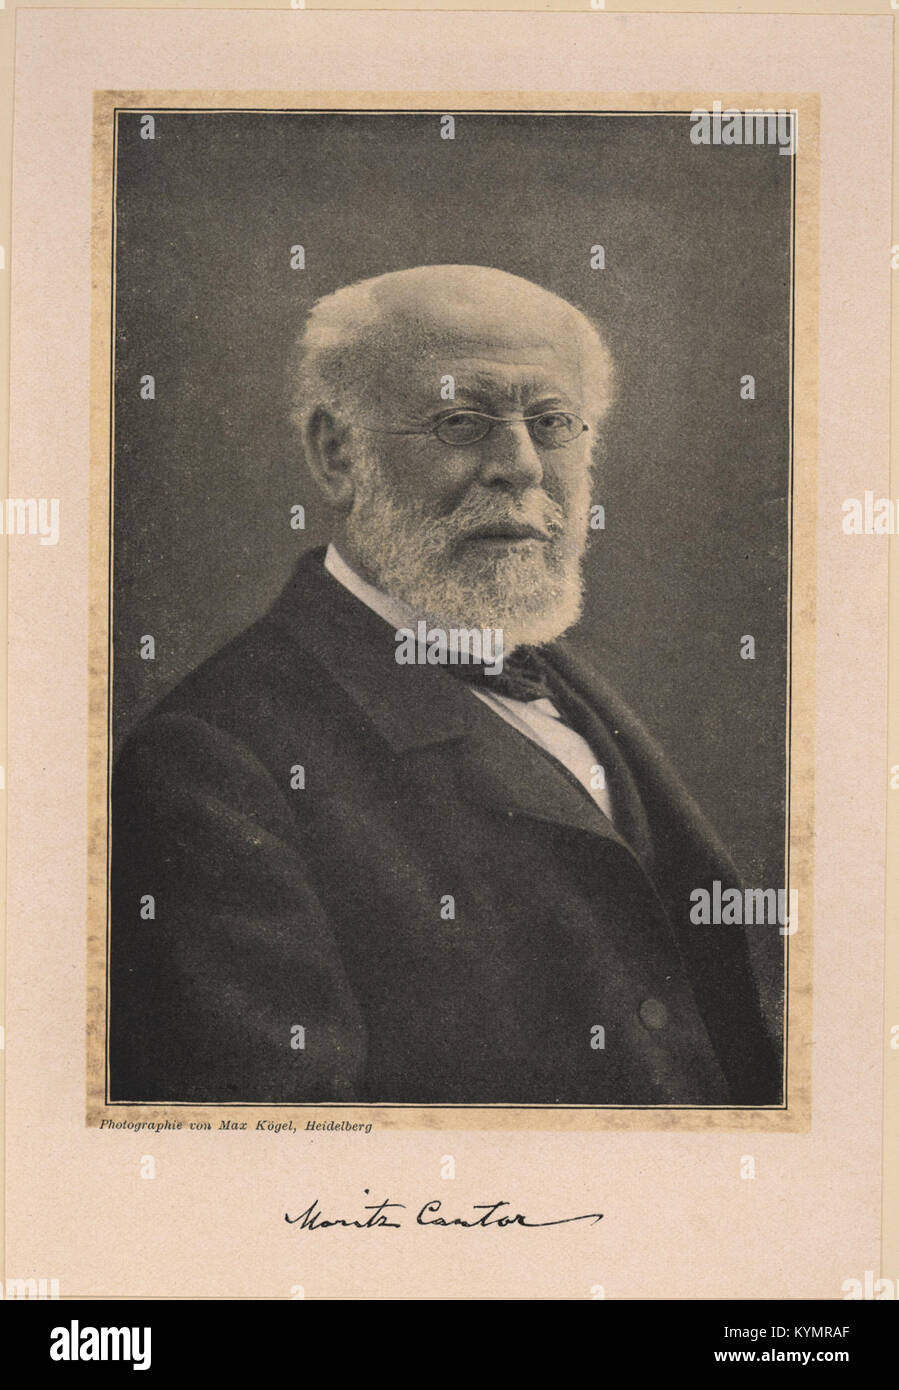 Portrait of Moritz Cantor (1829-1920), Mathematician 2551562248 o Stock ...